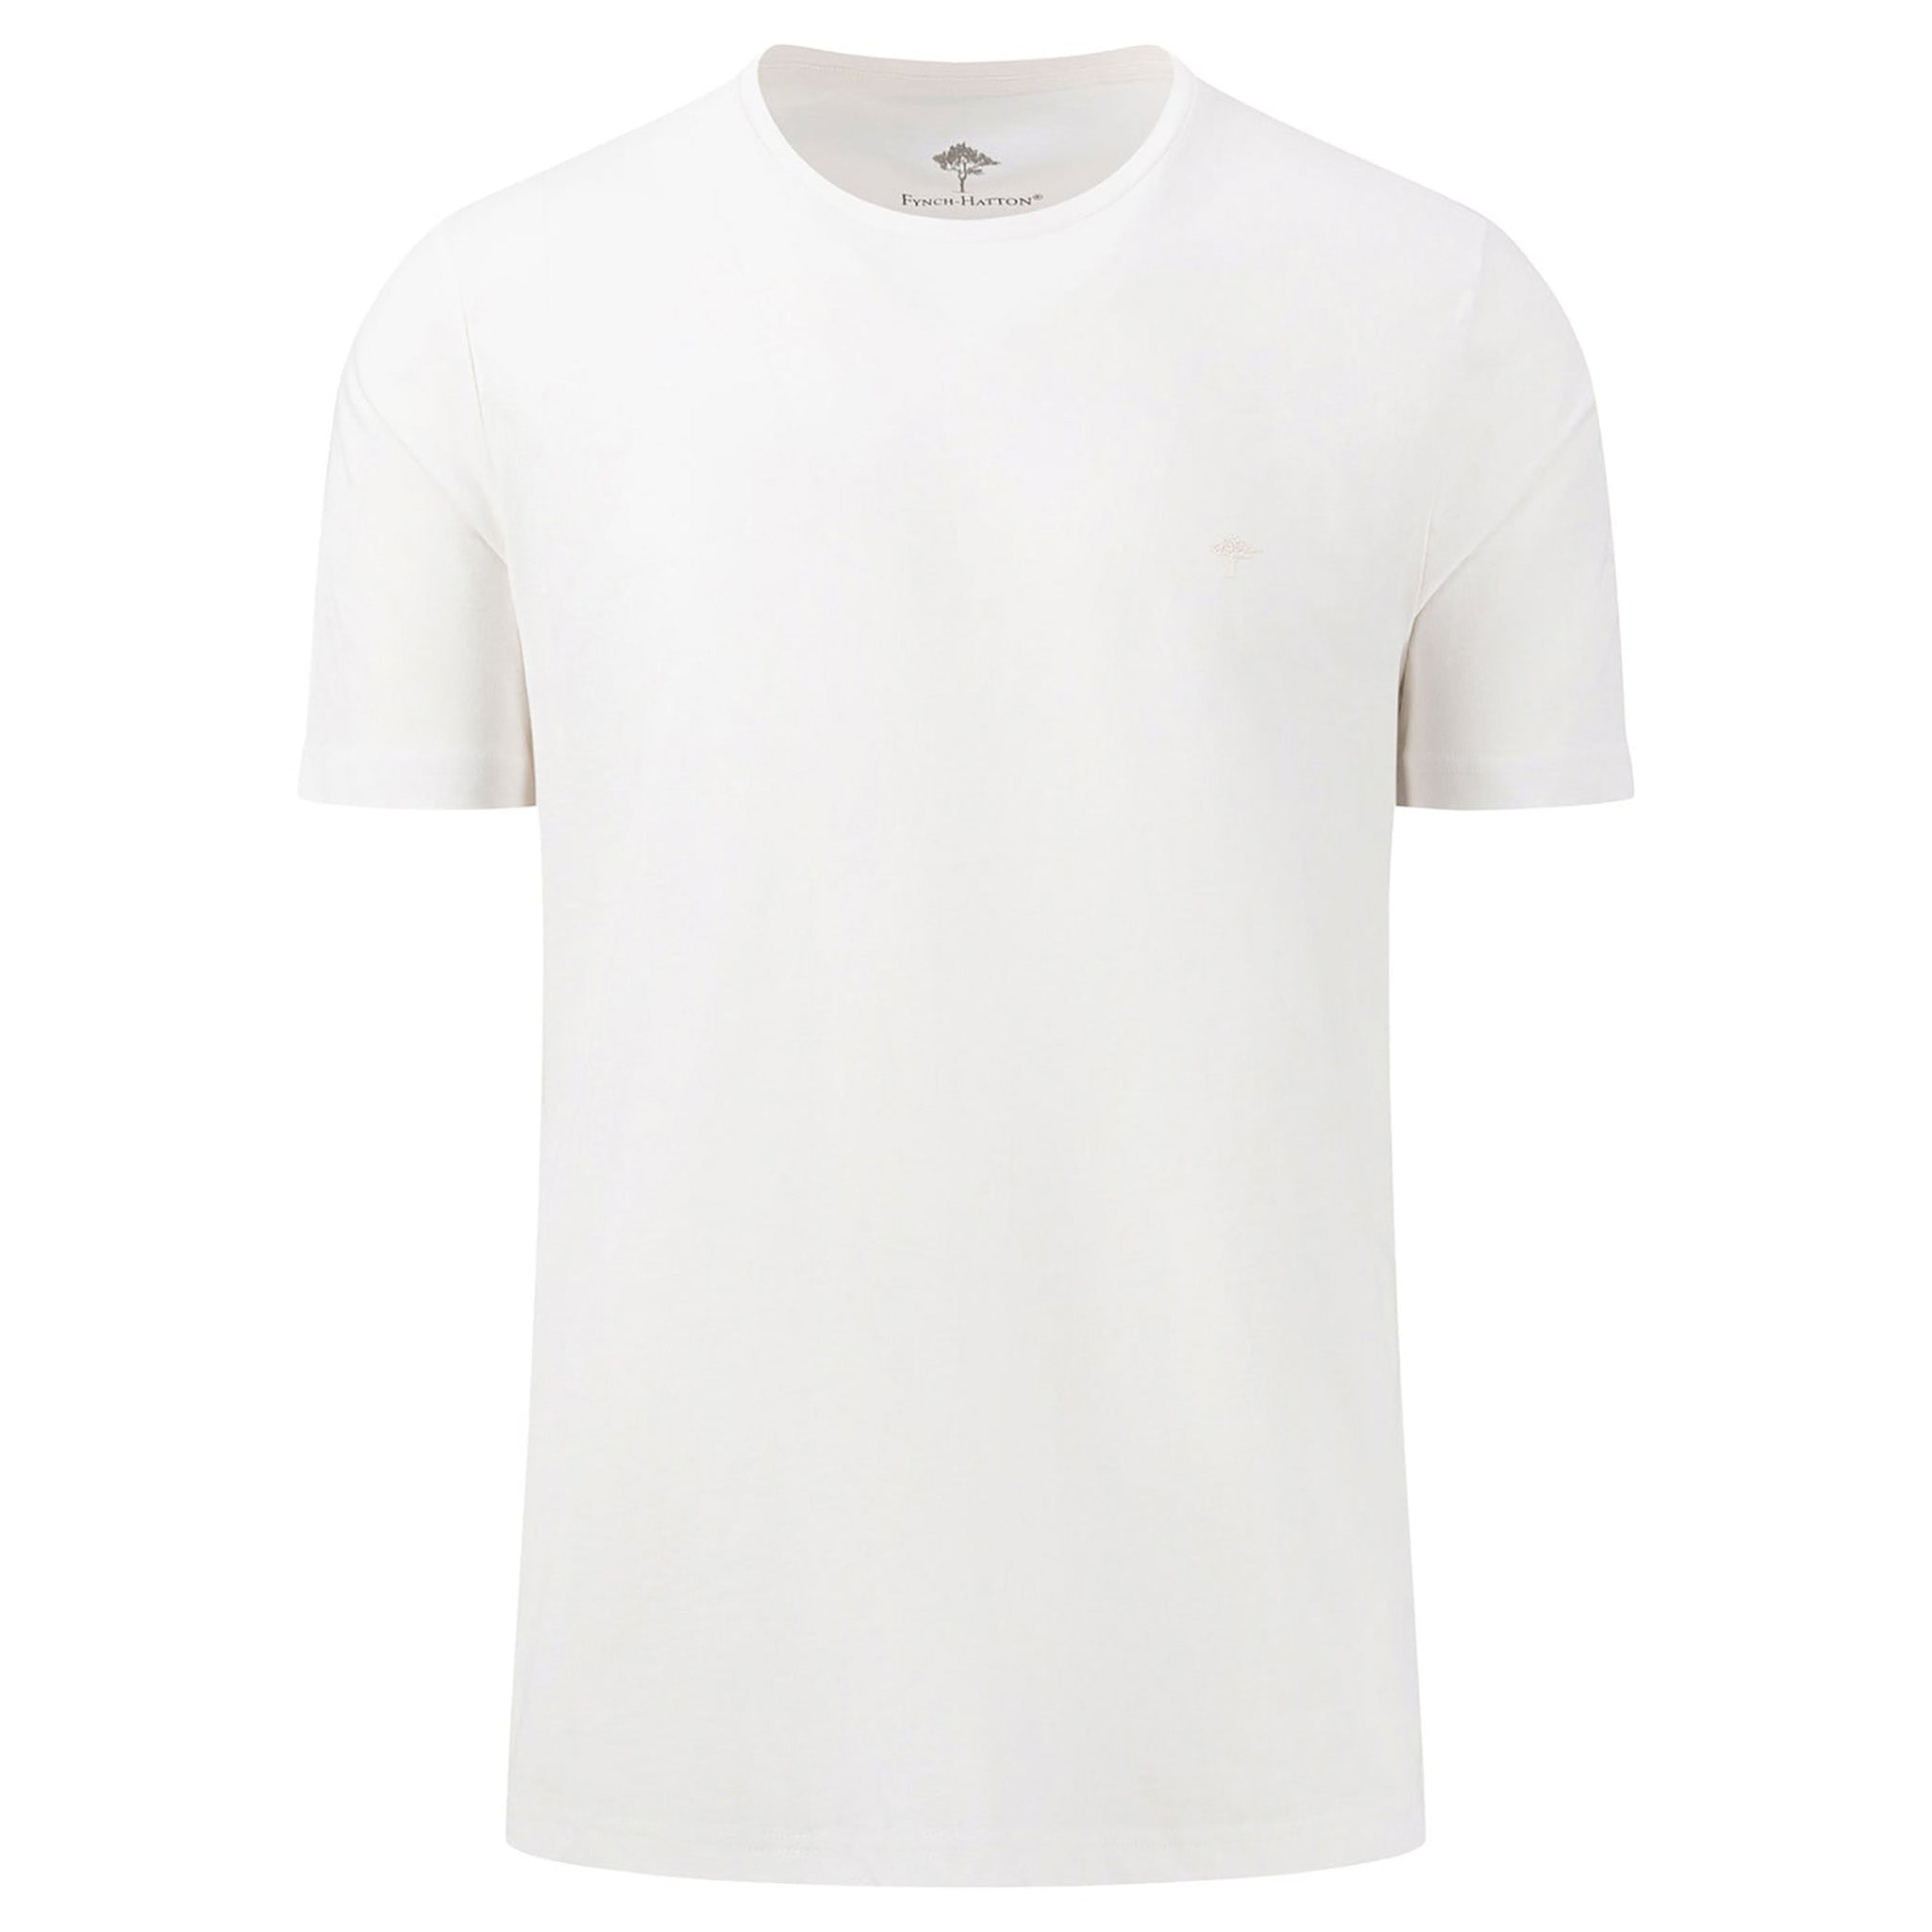 Fynch-Hatton. Miesten valkoinen T-paita. Etukuva.